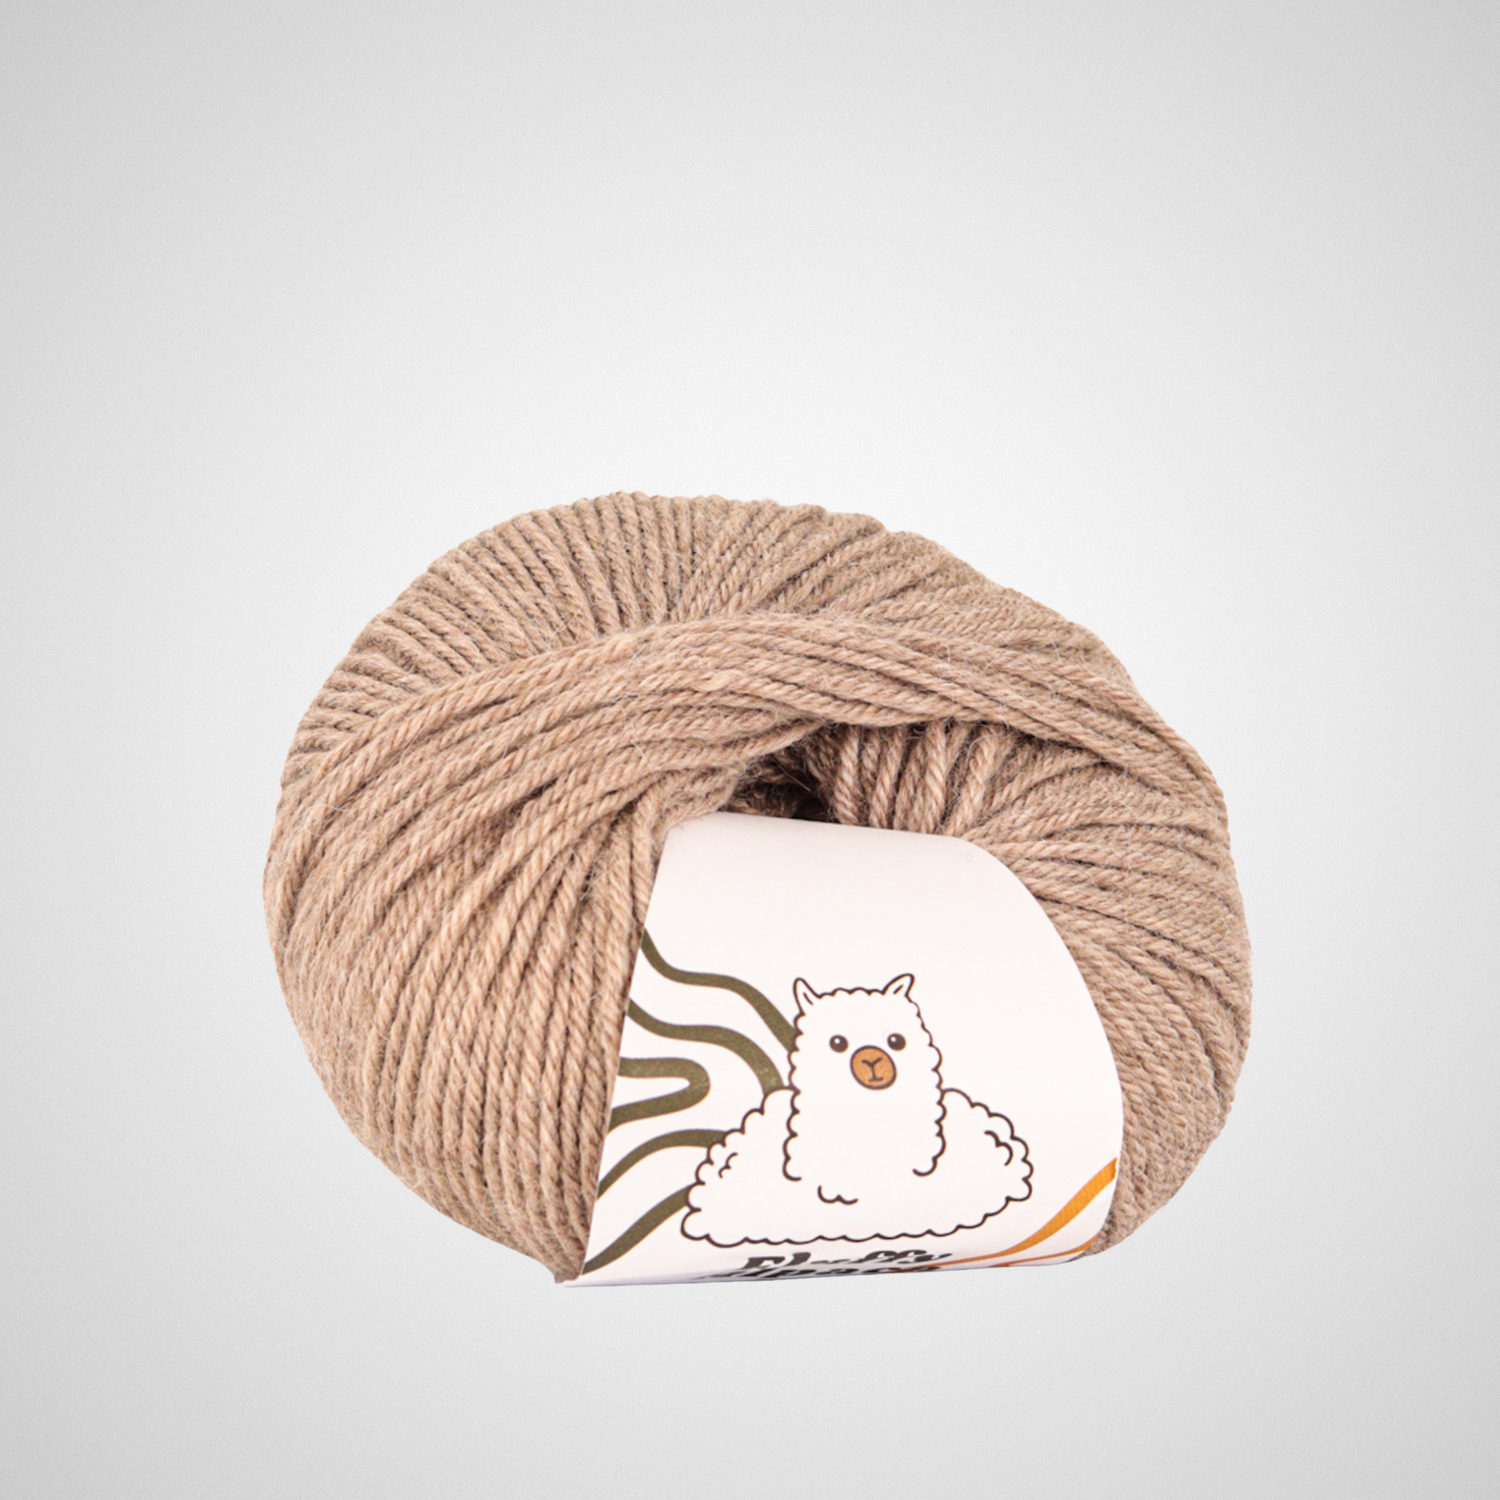 Fluffy Alpaca - Neulontalanka - 100% alpakan villa - Kaikki värit